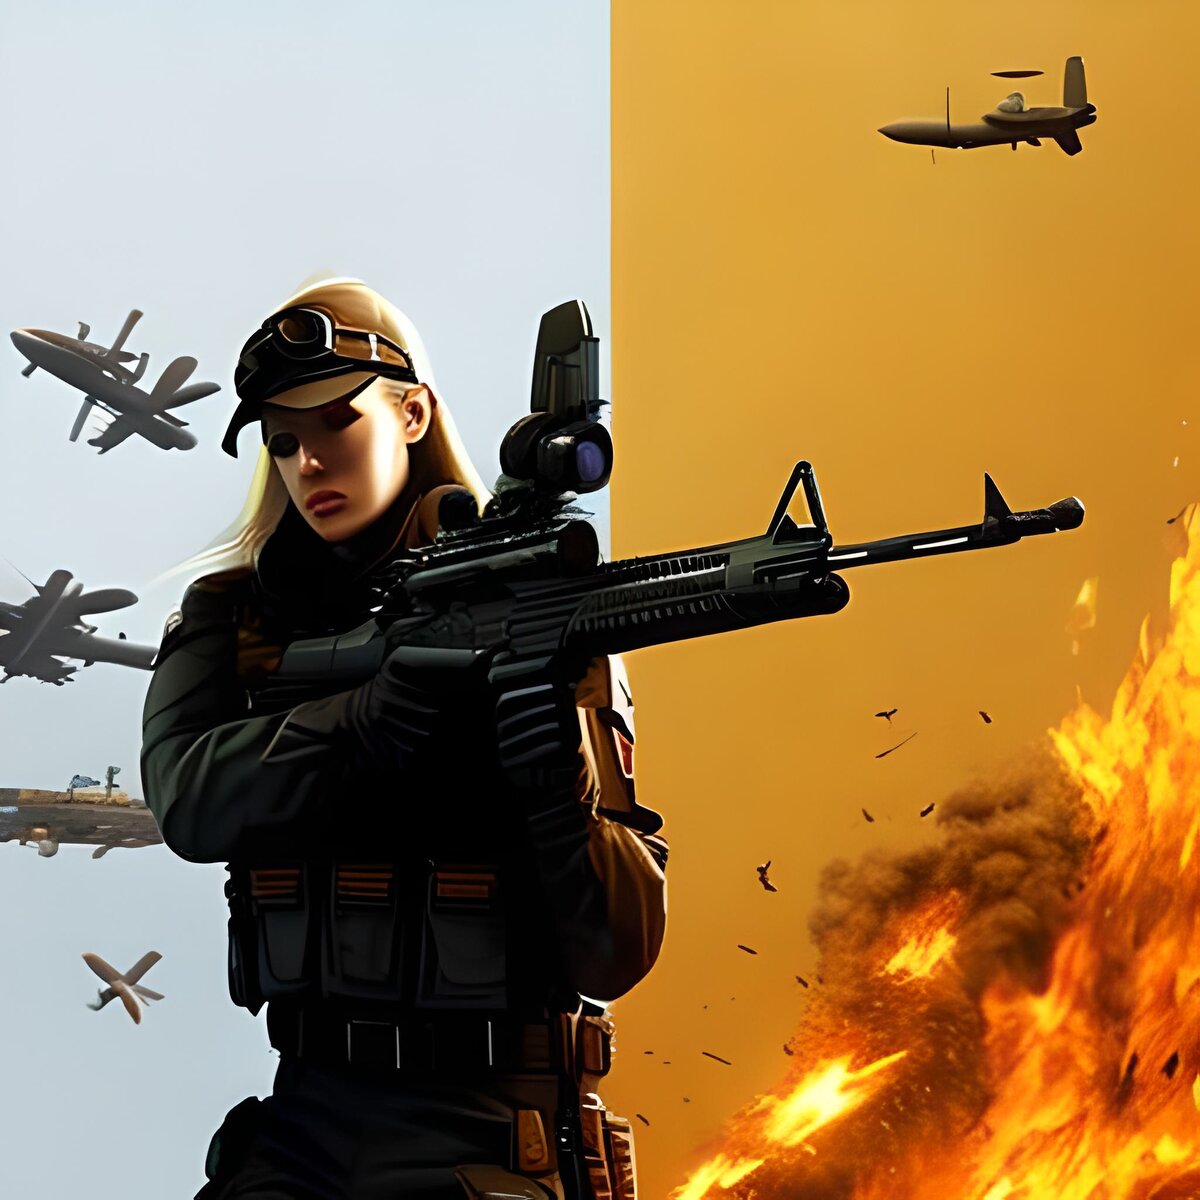 Игроки могут наслаждаться бета-версией игры Counter-Strike 2, которая доступна на торрентах в режиме офлайн-игры.